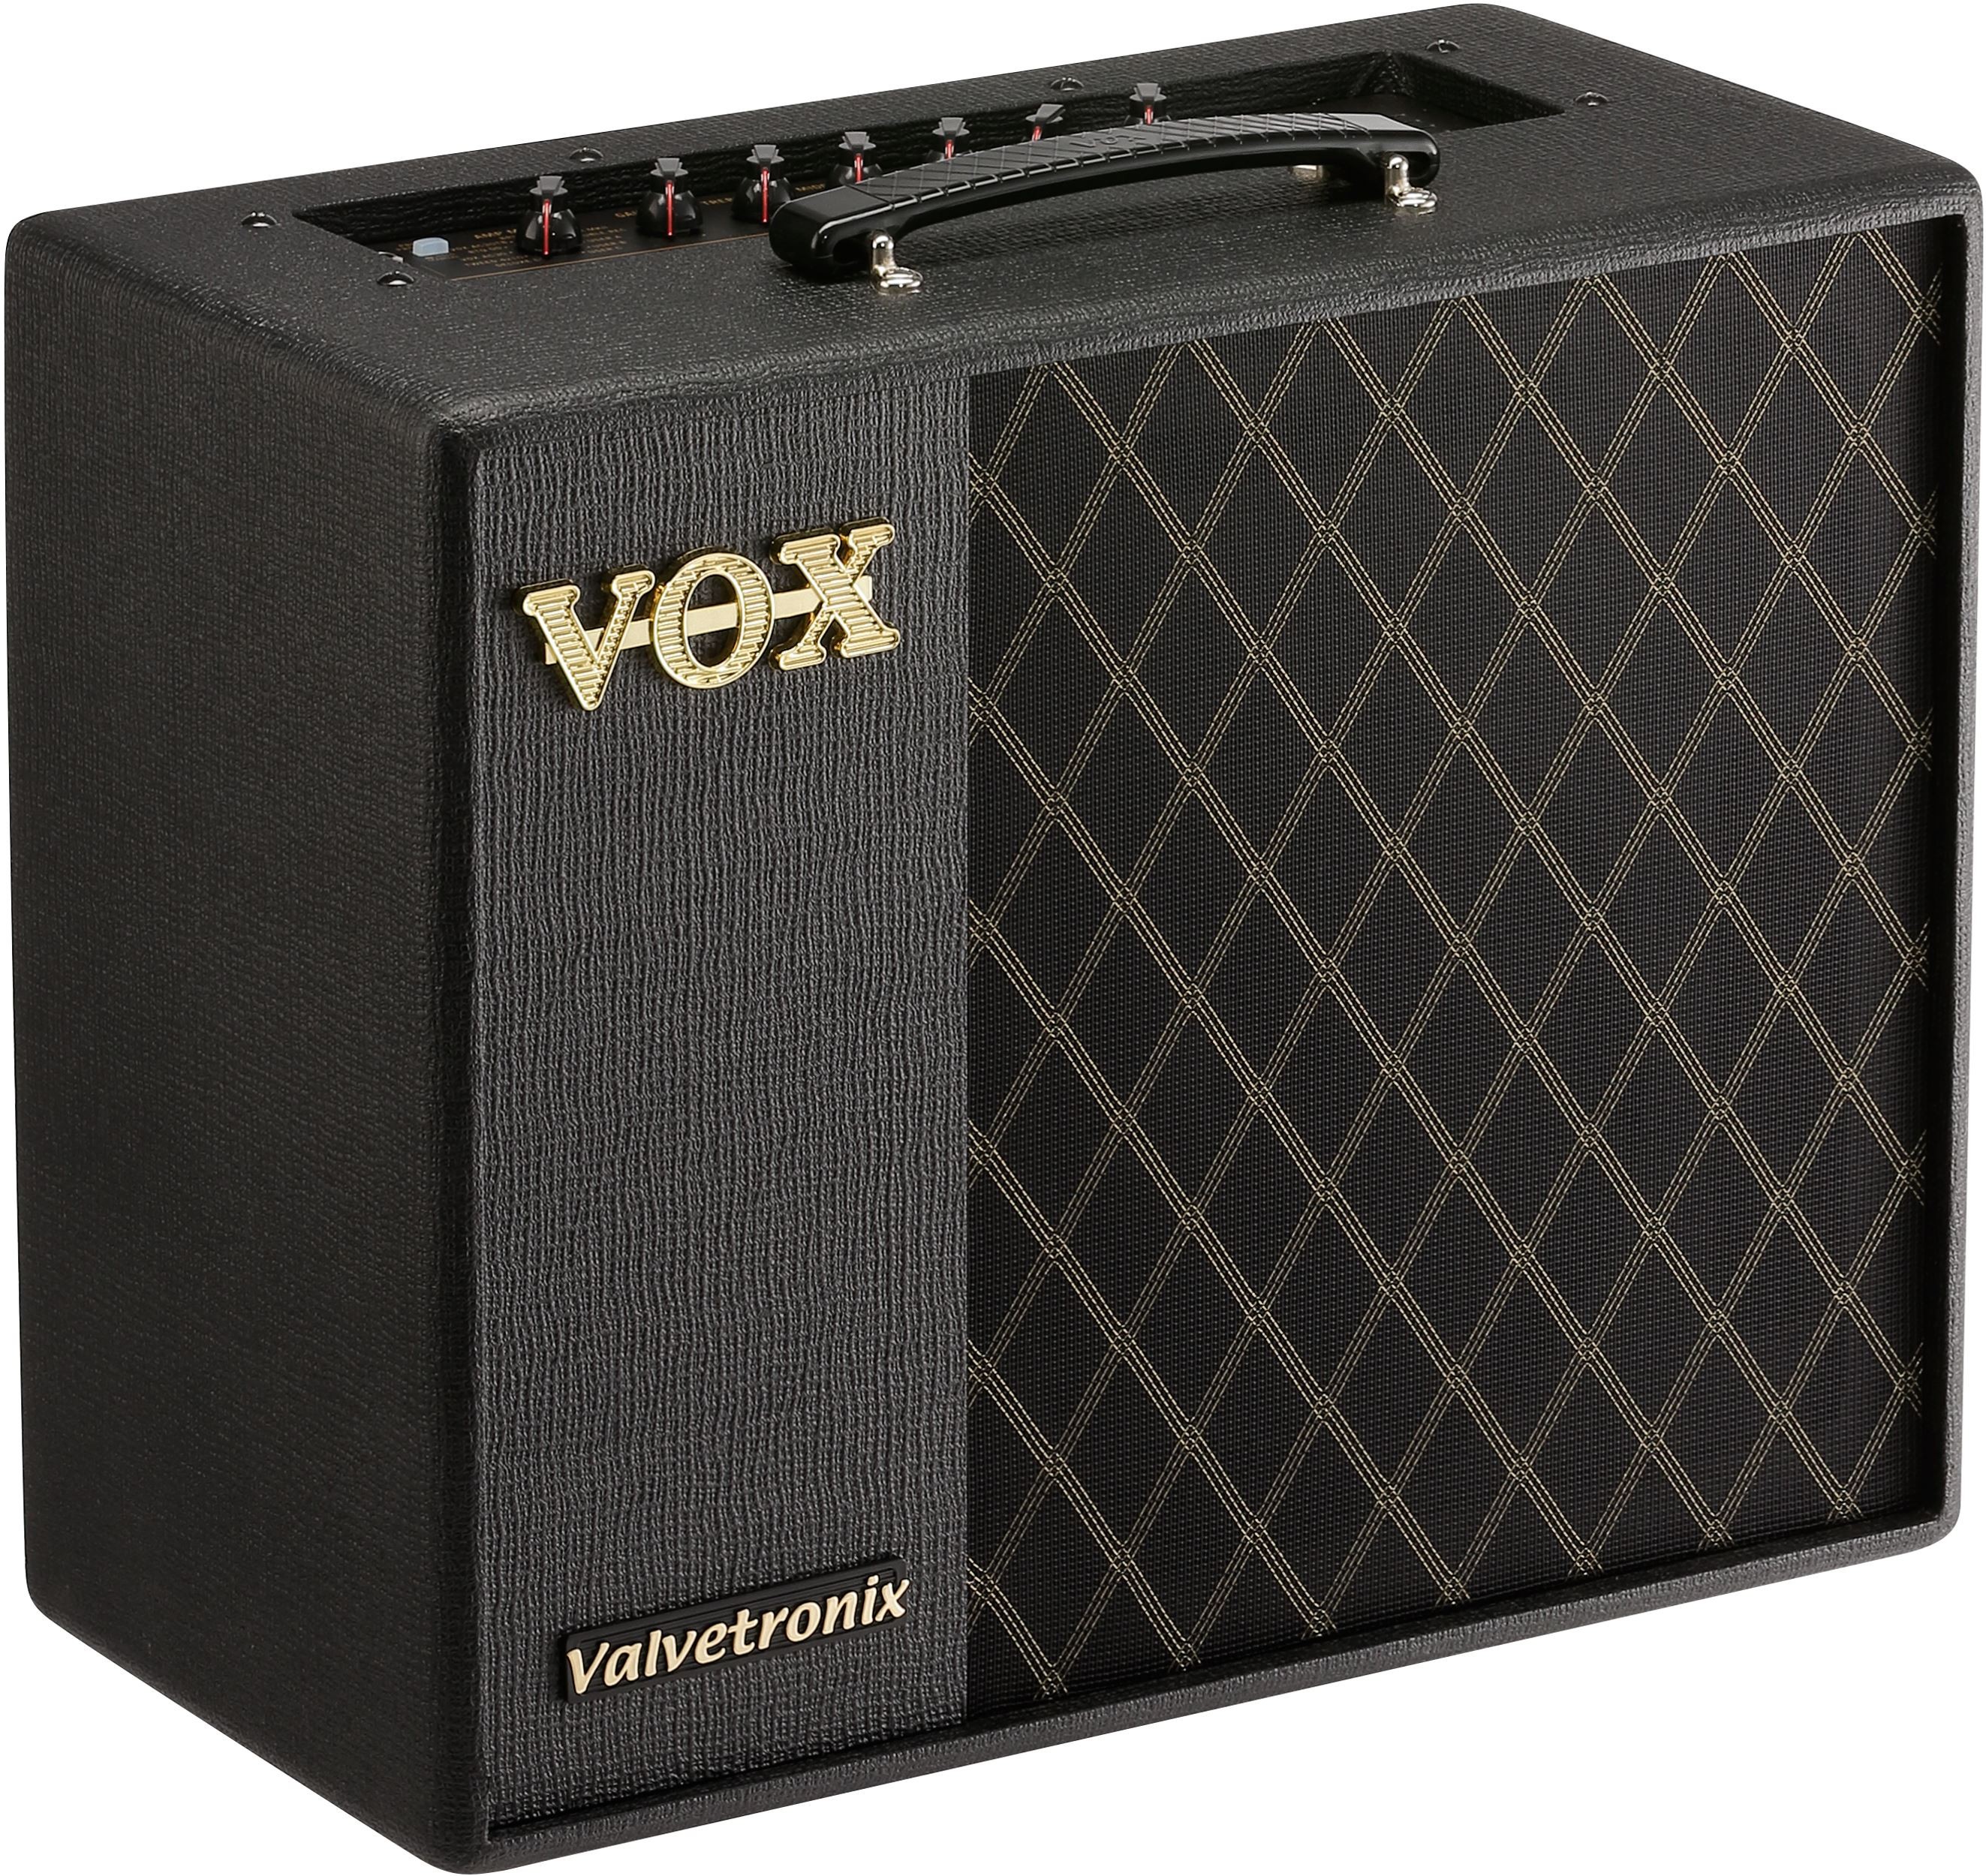 VOX VT40X - 40W gitarforsterker